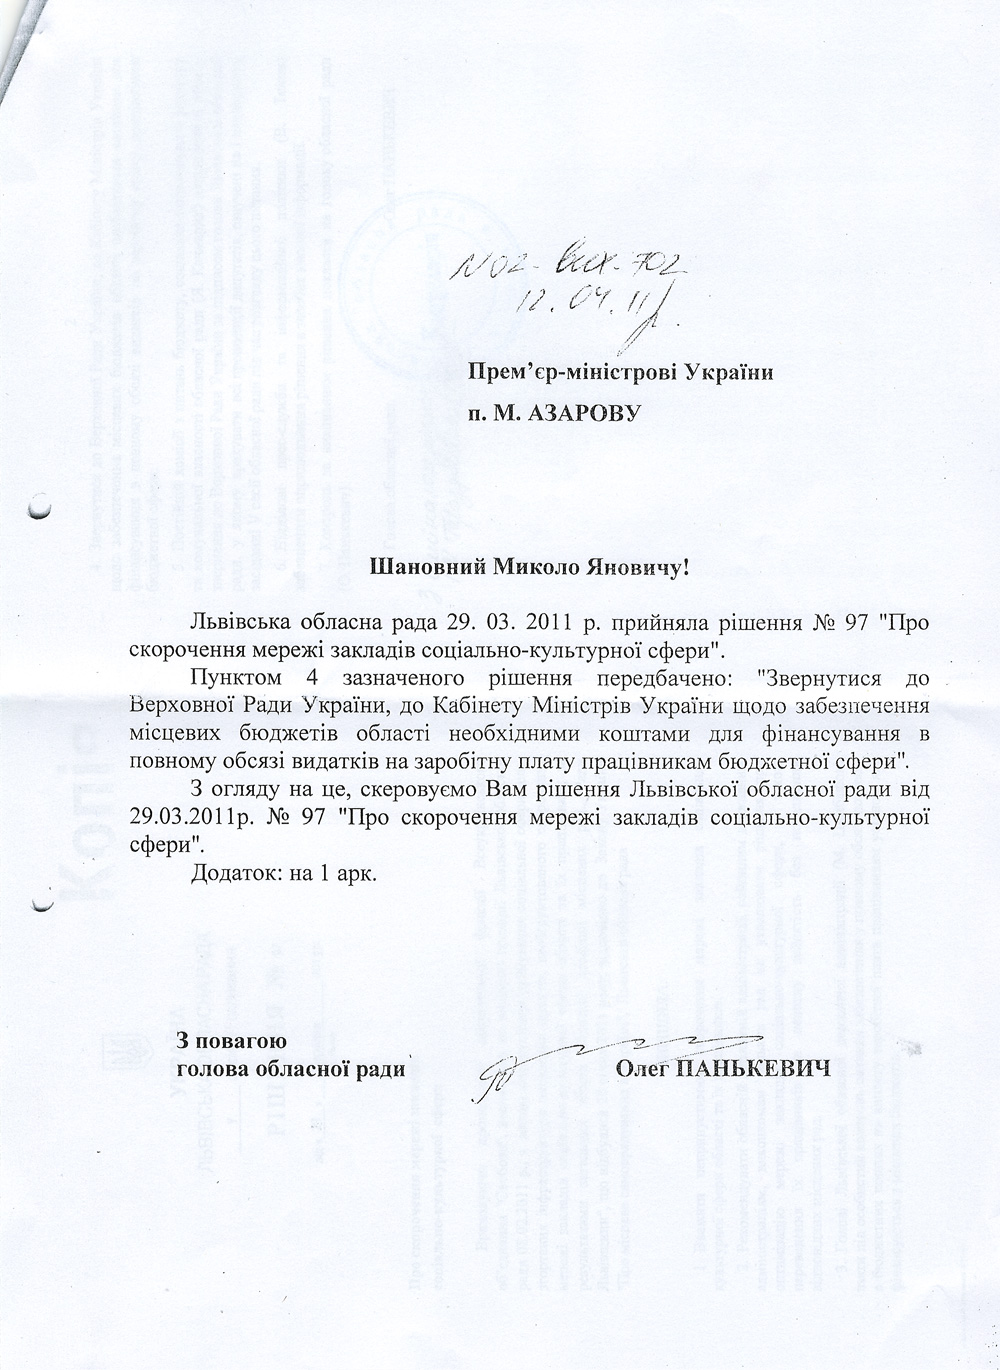 Письмо Львовского обласного совета №2-вых-702 от 12.04.2011 г. с принятием решения №97 от 29.03.2011 г.